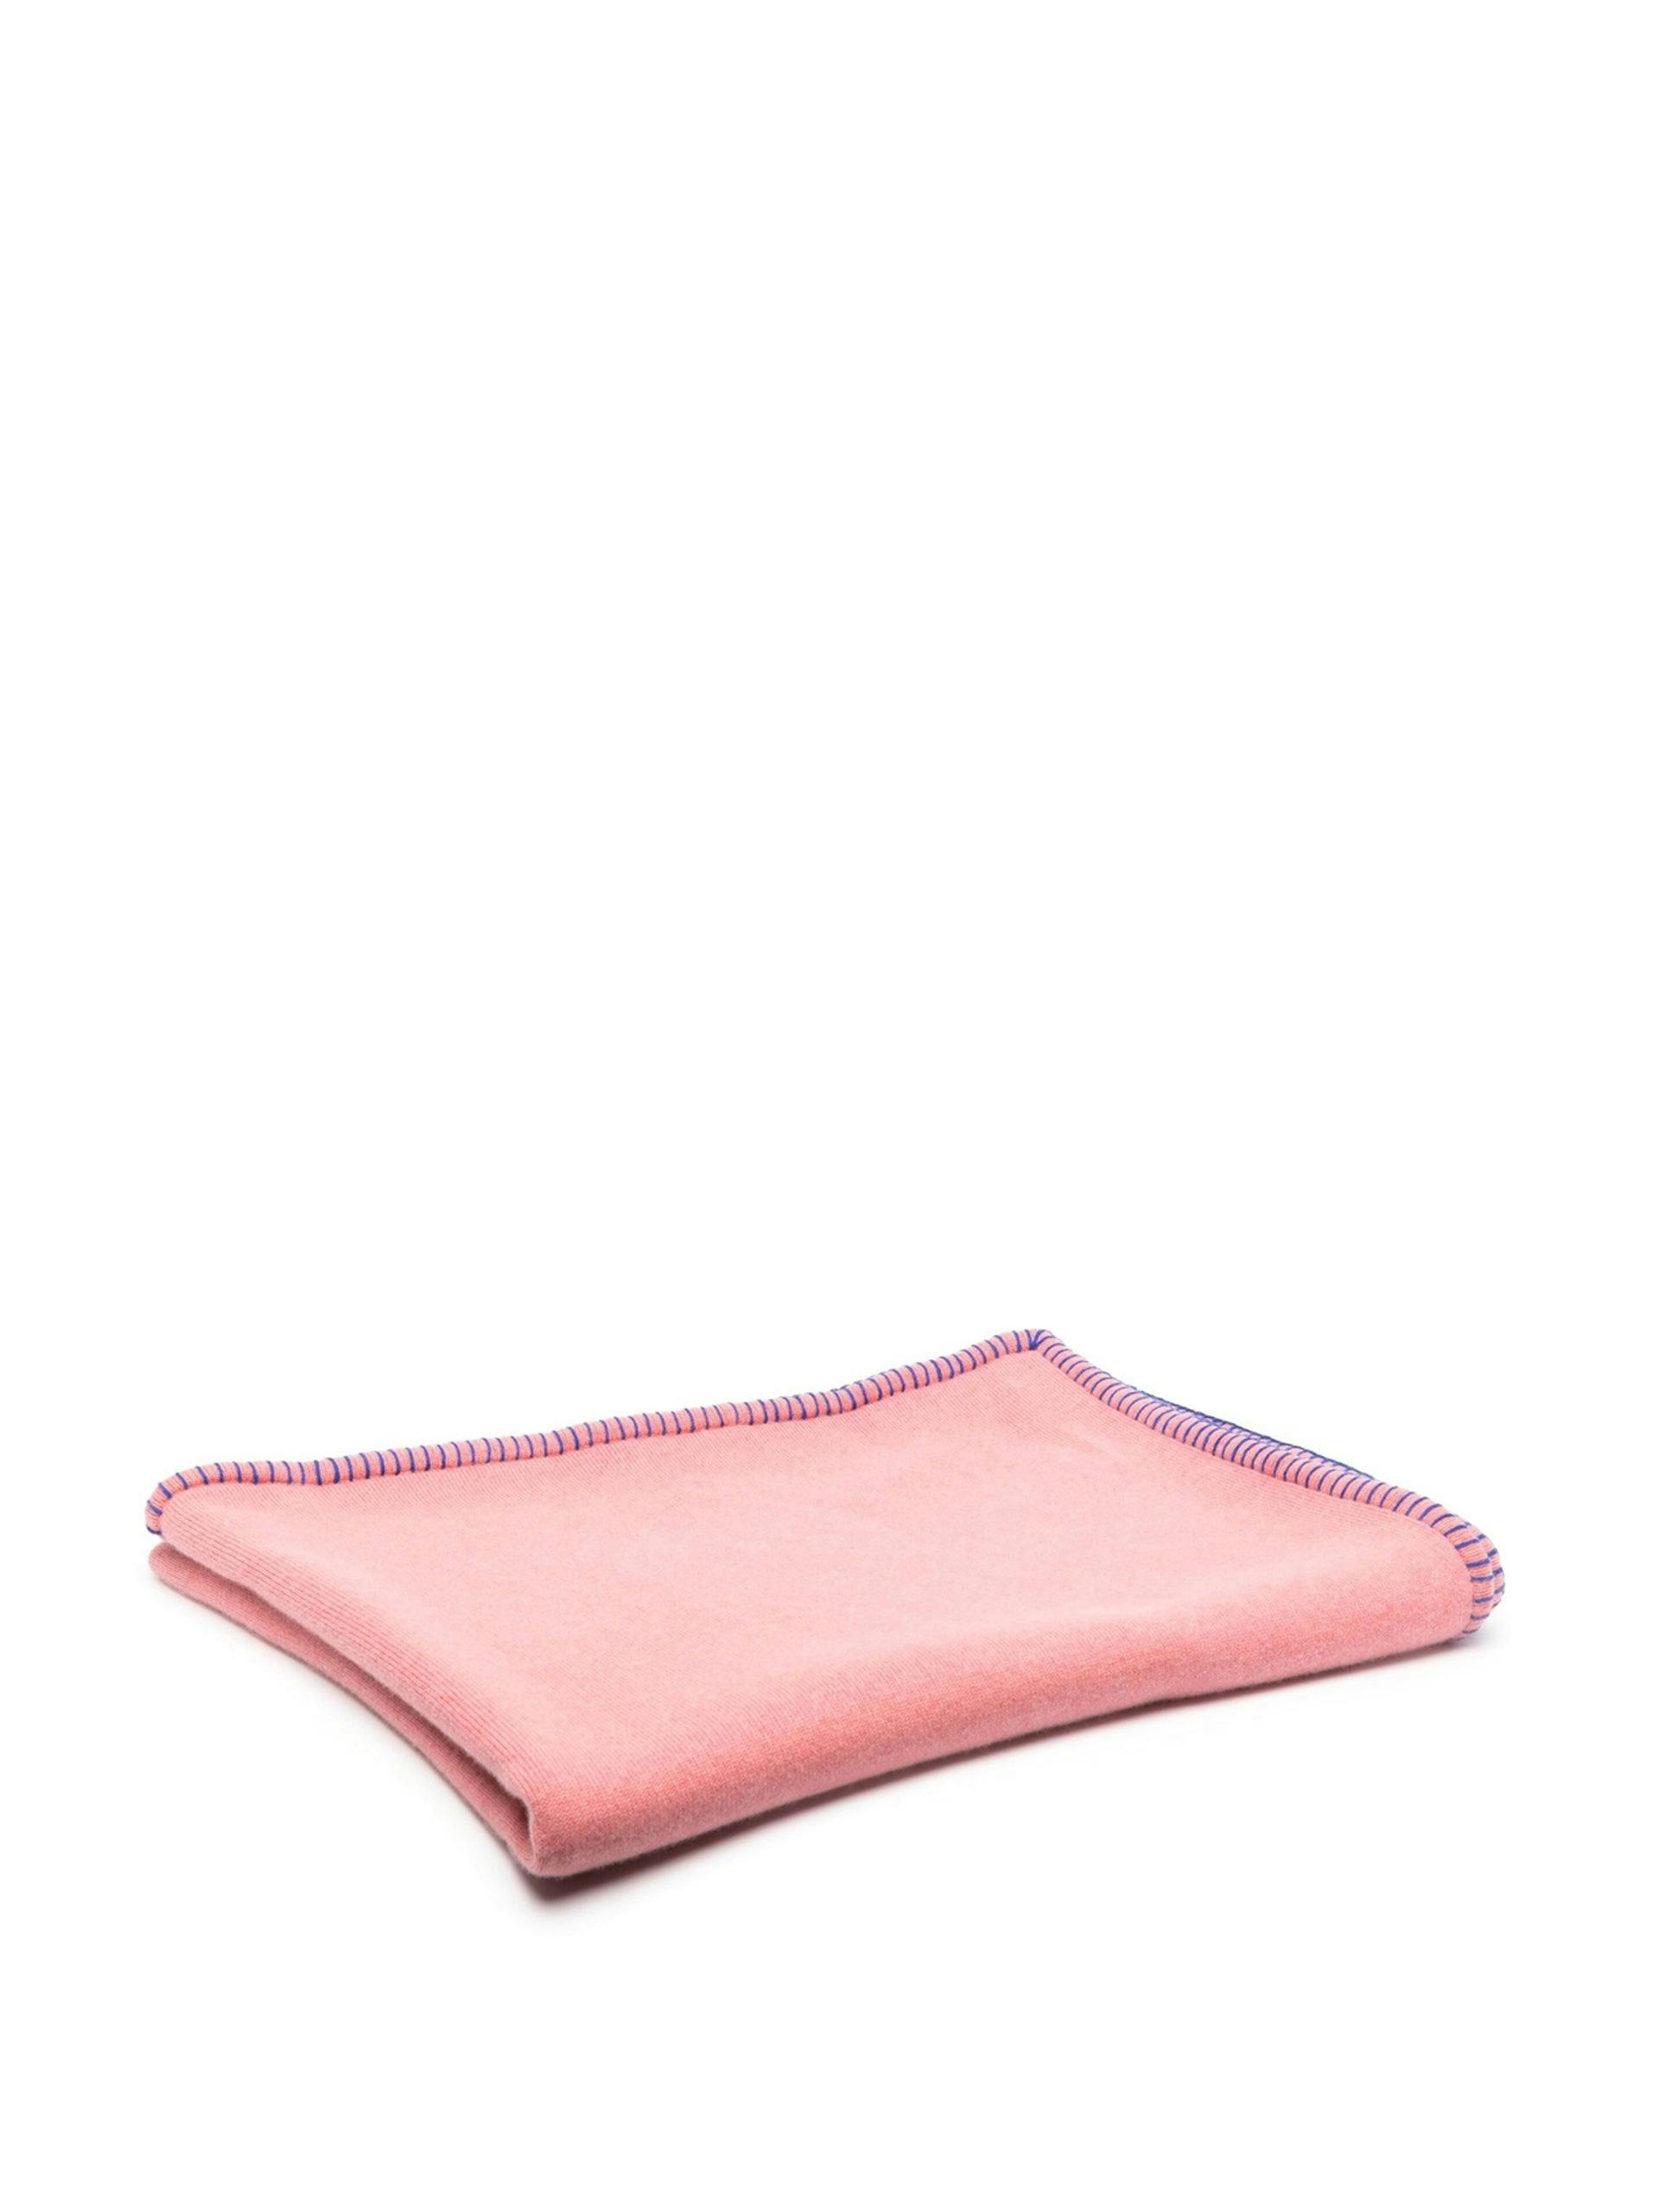 Pink Stockholm cashmere blanket